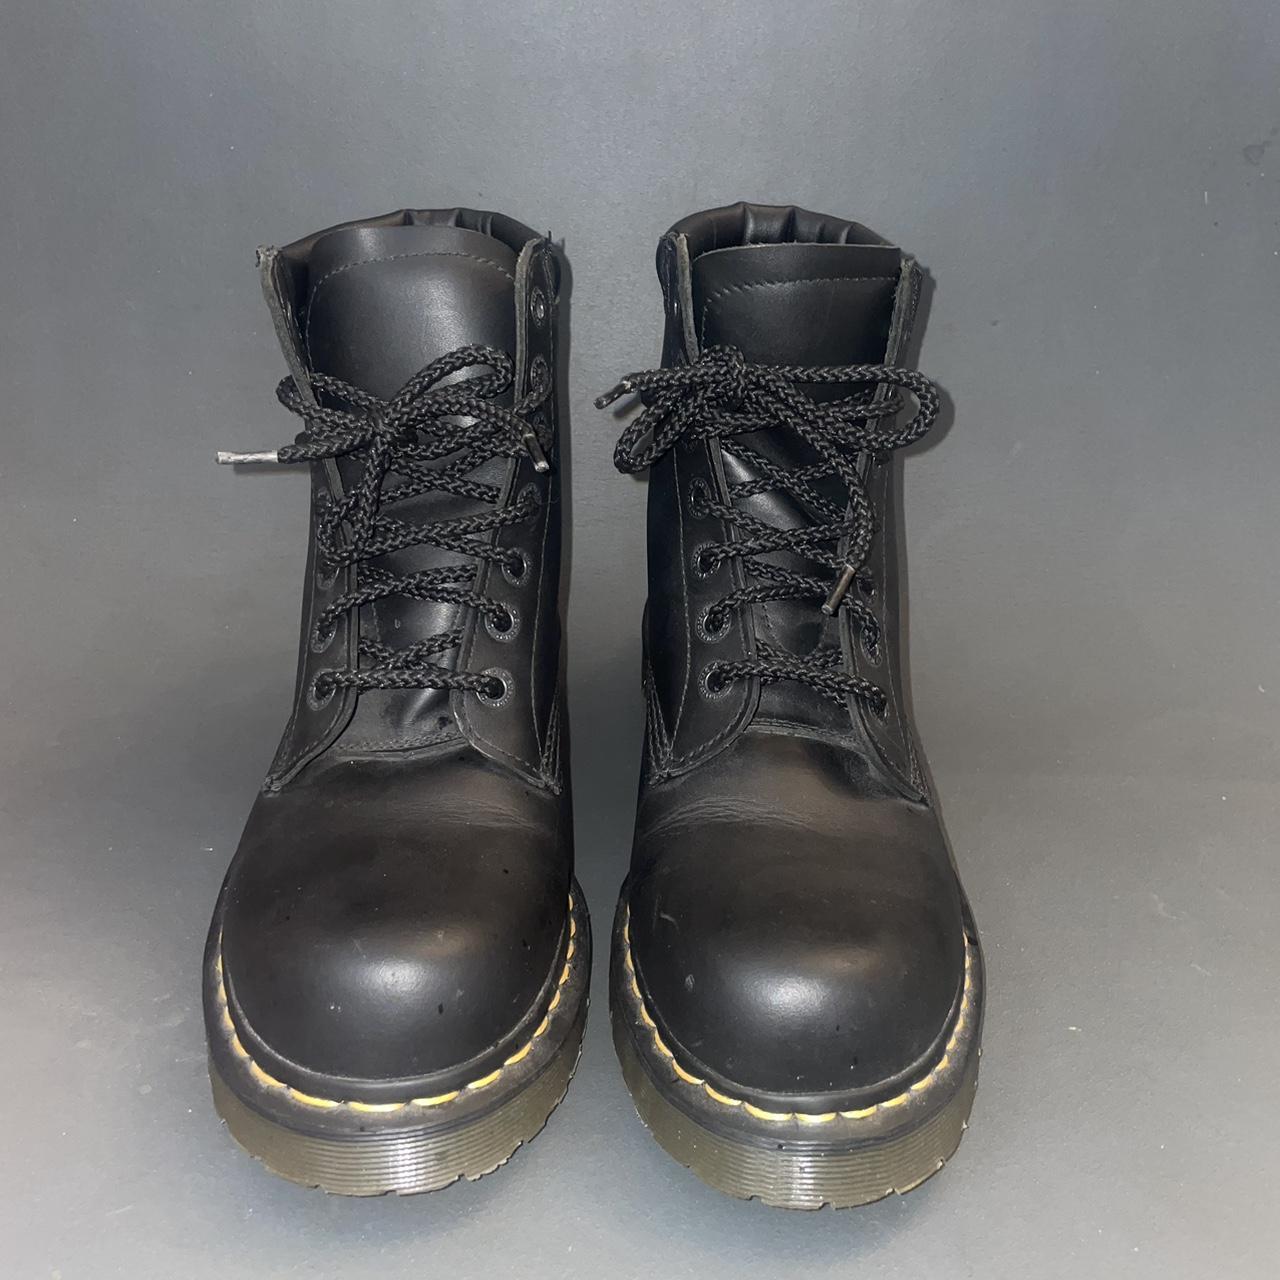 Dr Martens Industrial Work Boots - UK Size 8 -... - Depop